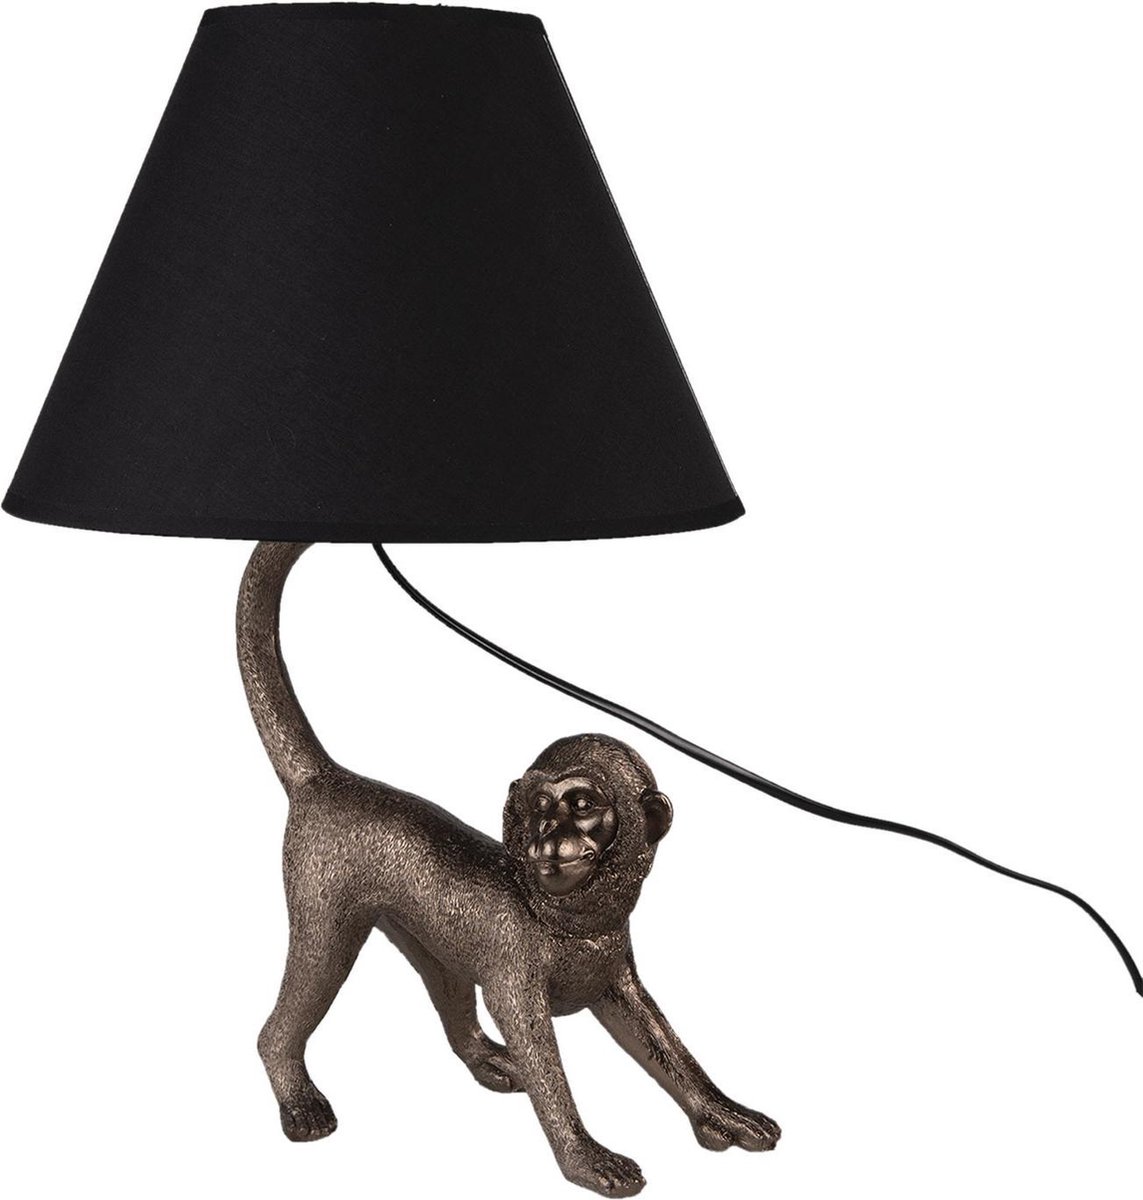 Tafellamp - Tafellamp Aap - Tafellamp Slaapkamer - Tafellamp Dier - Dieren - Tafellampen - Zwart - Brons - 43 cm